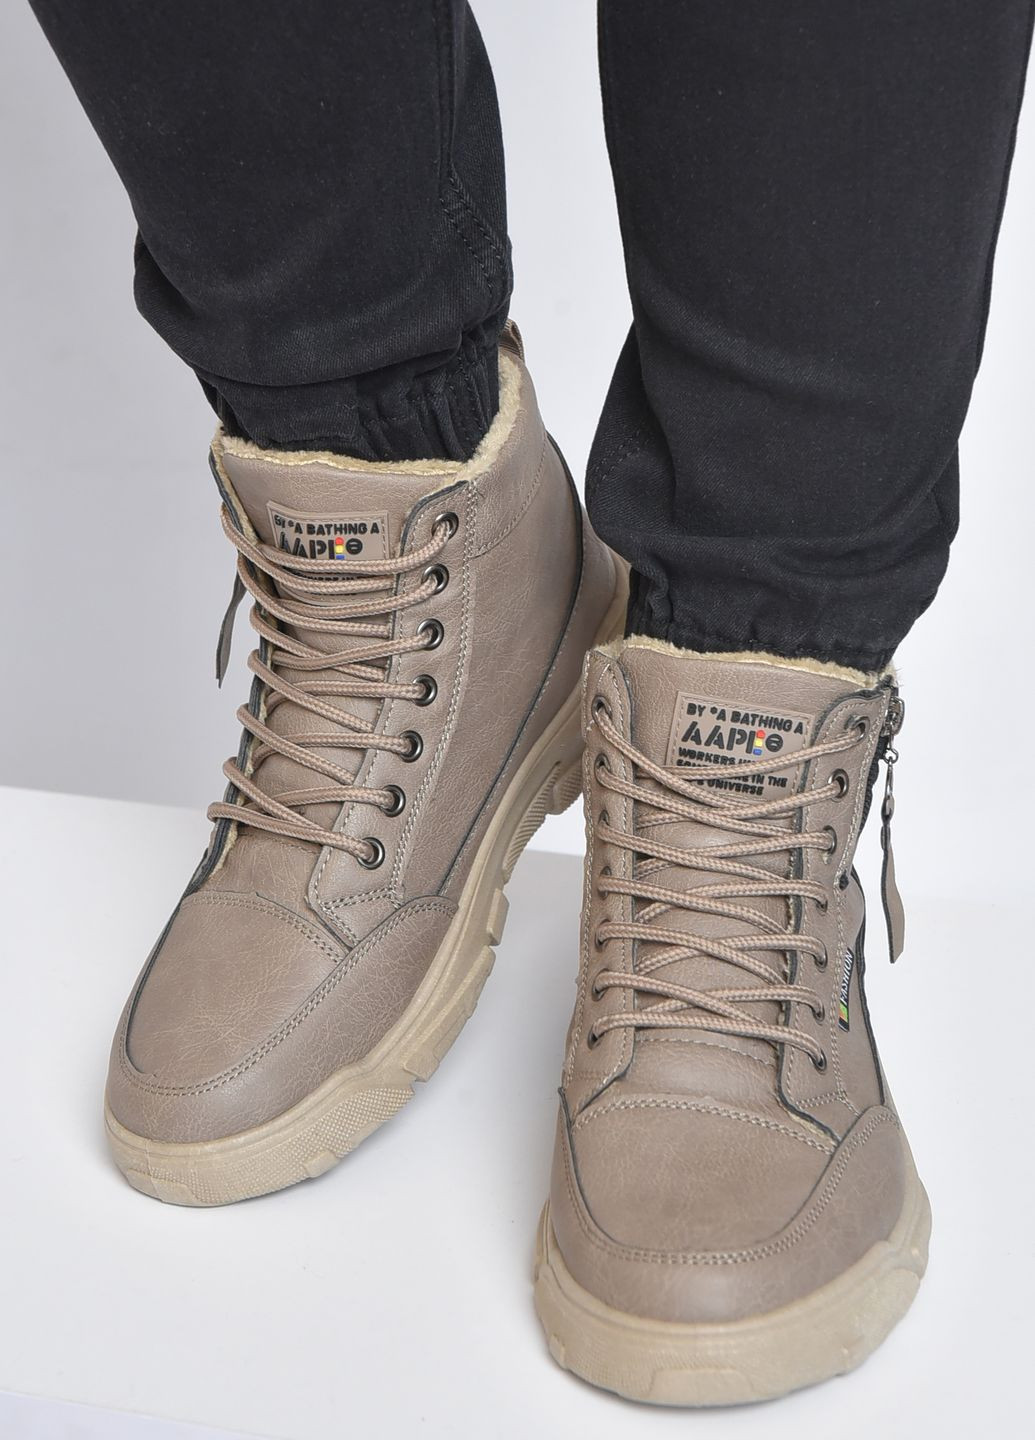 Бежевые осенние ботинки мужские демисезонные бежевого цвета Let's Shop